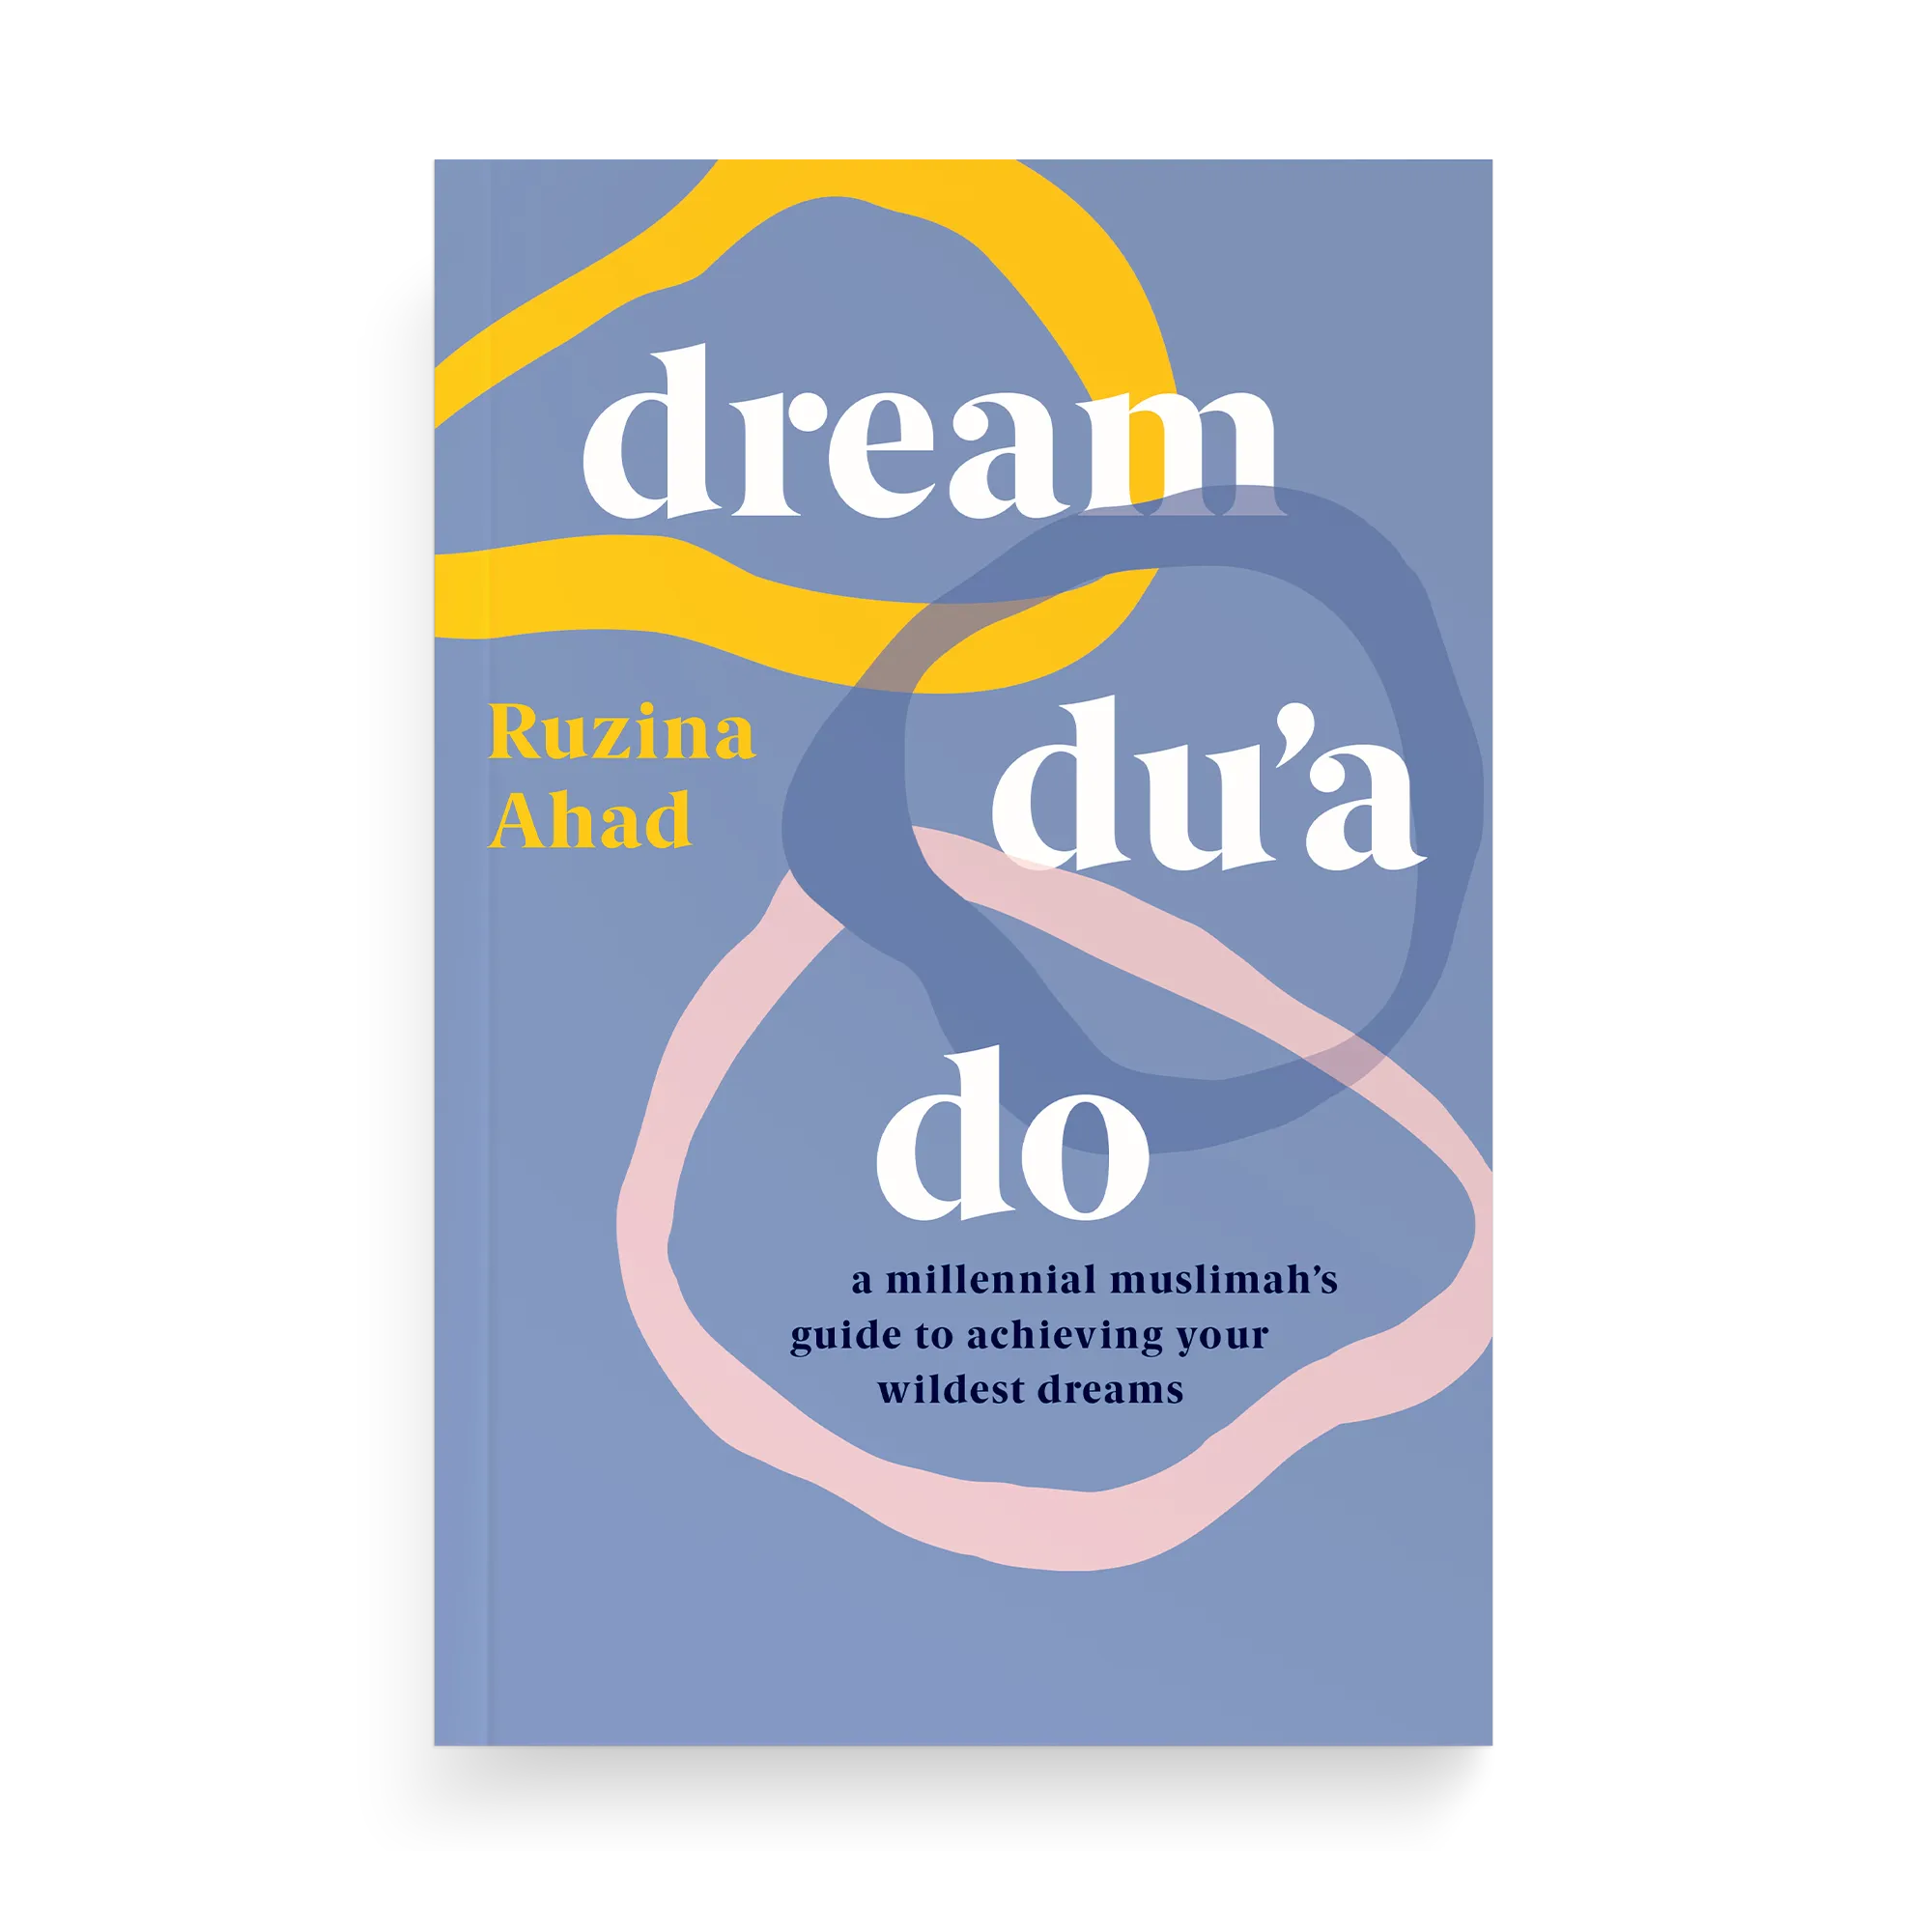 Dream Du'a Do by Ruzina Ahad